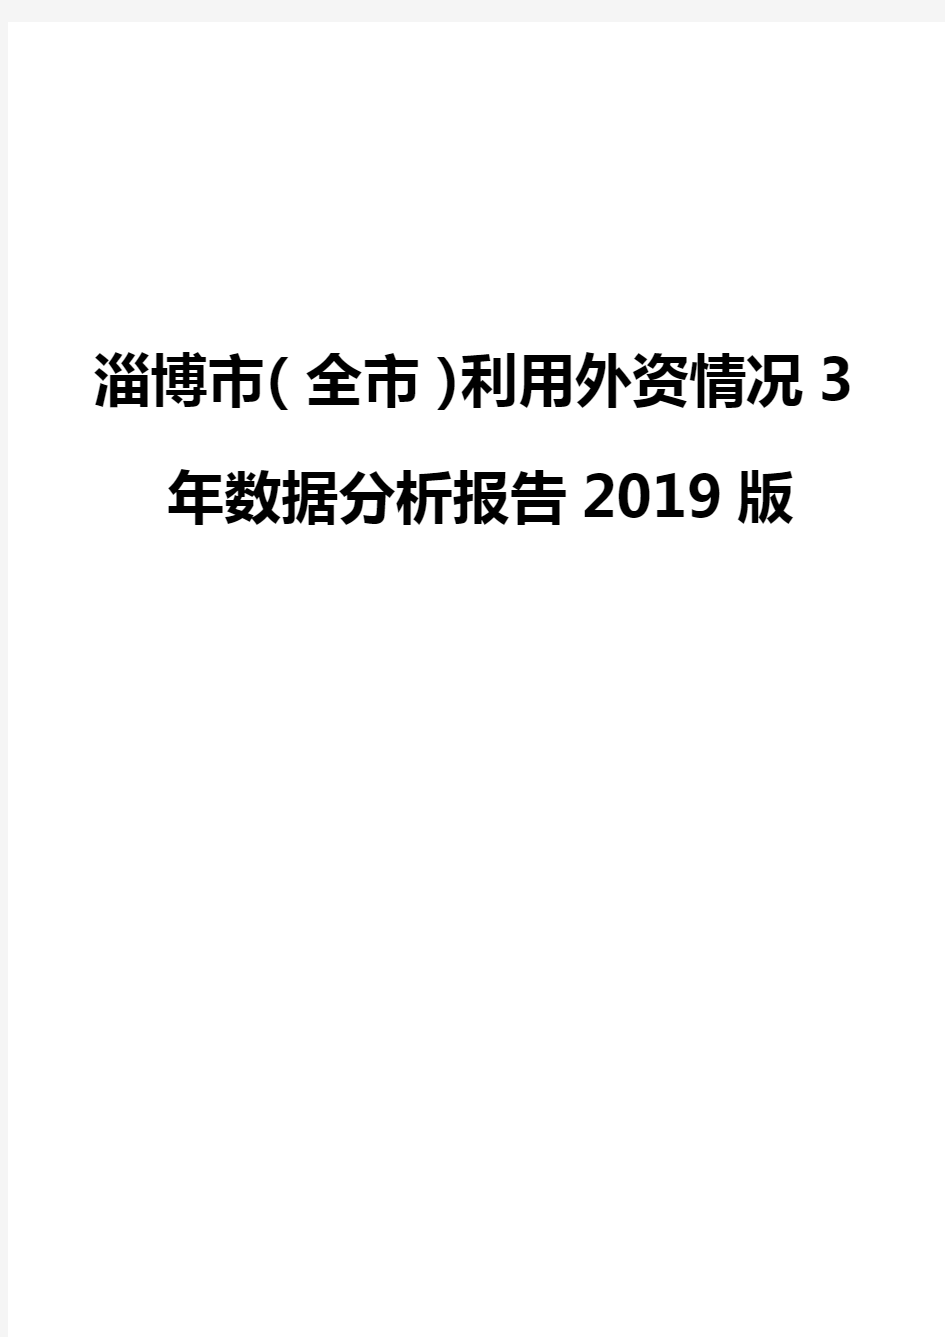 淄博市(全市)利用外资情况3年数据分析报告2019版